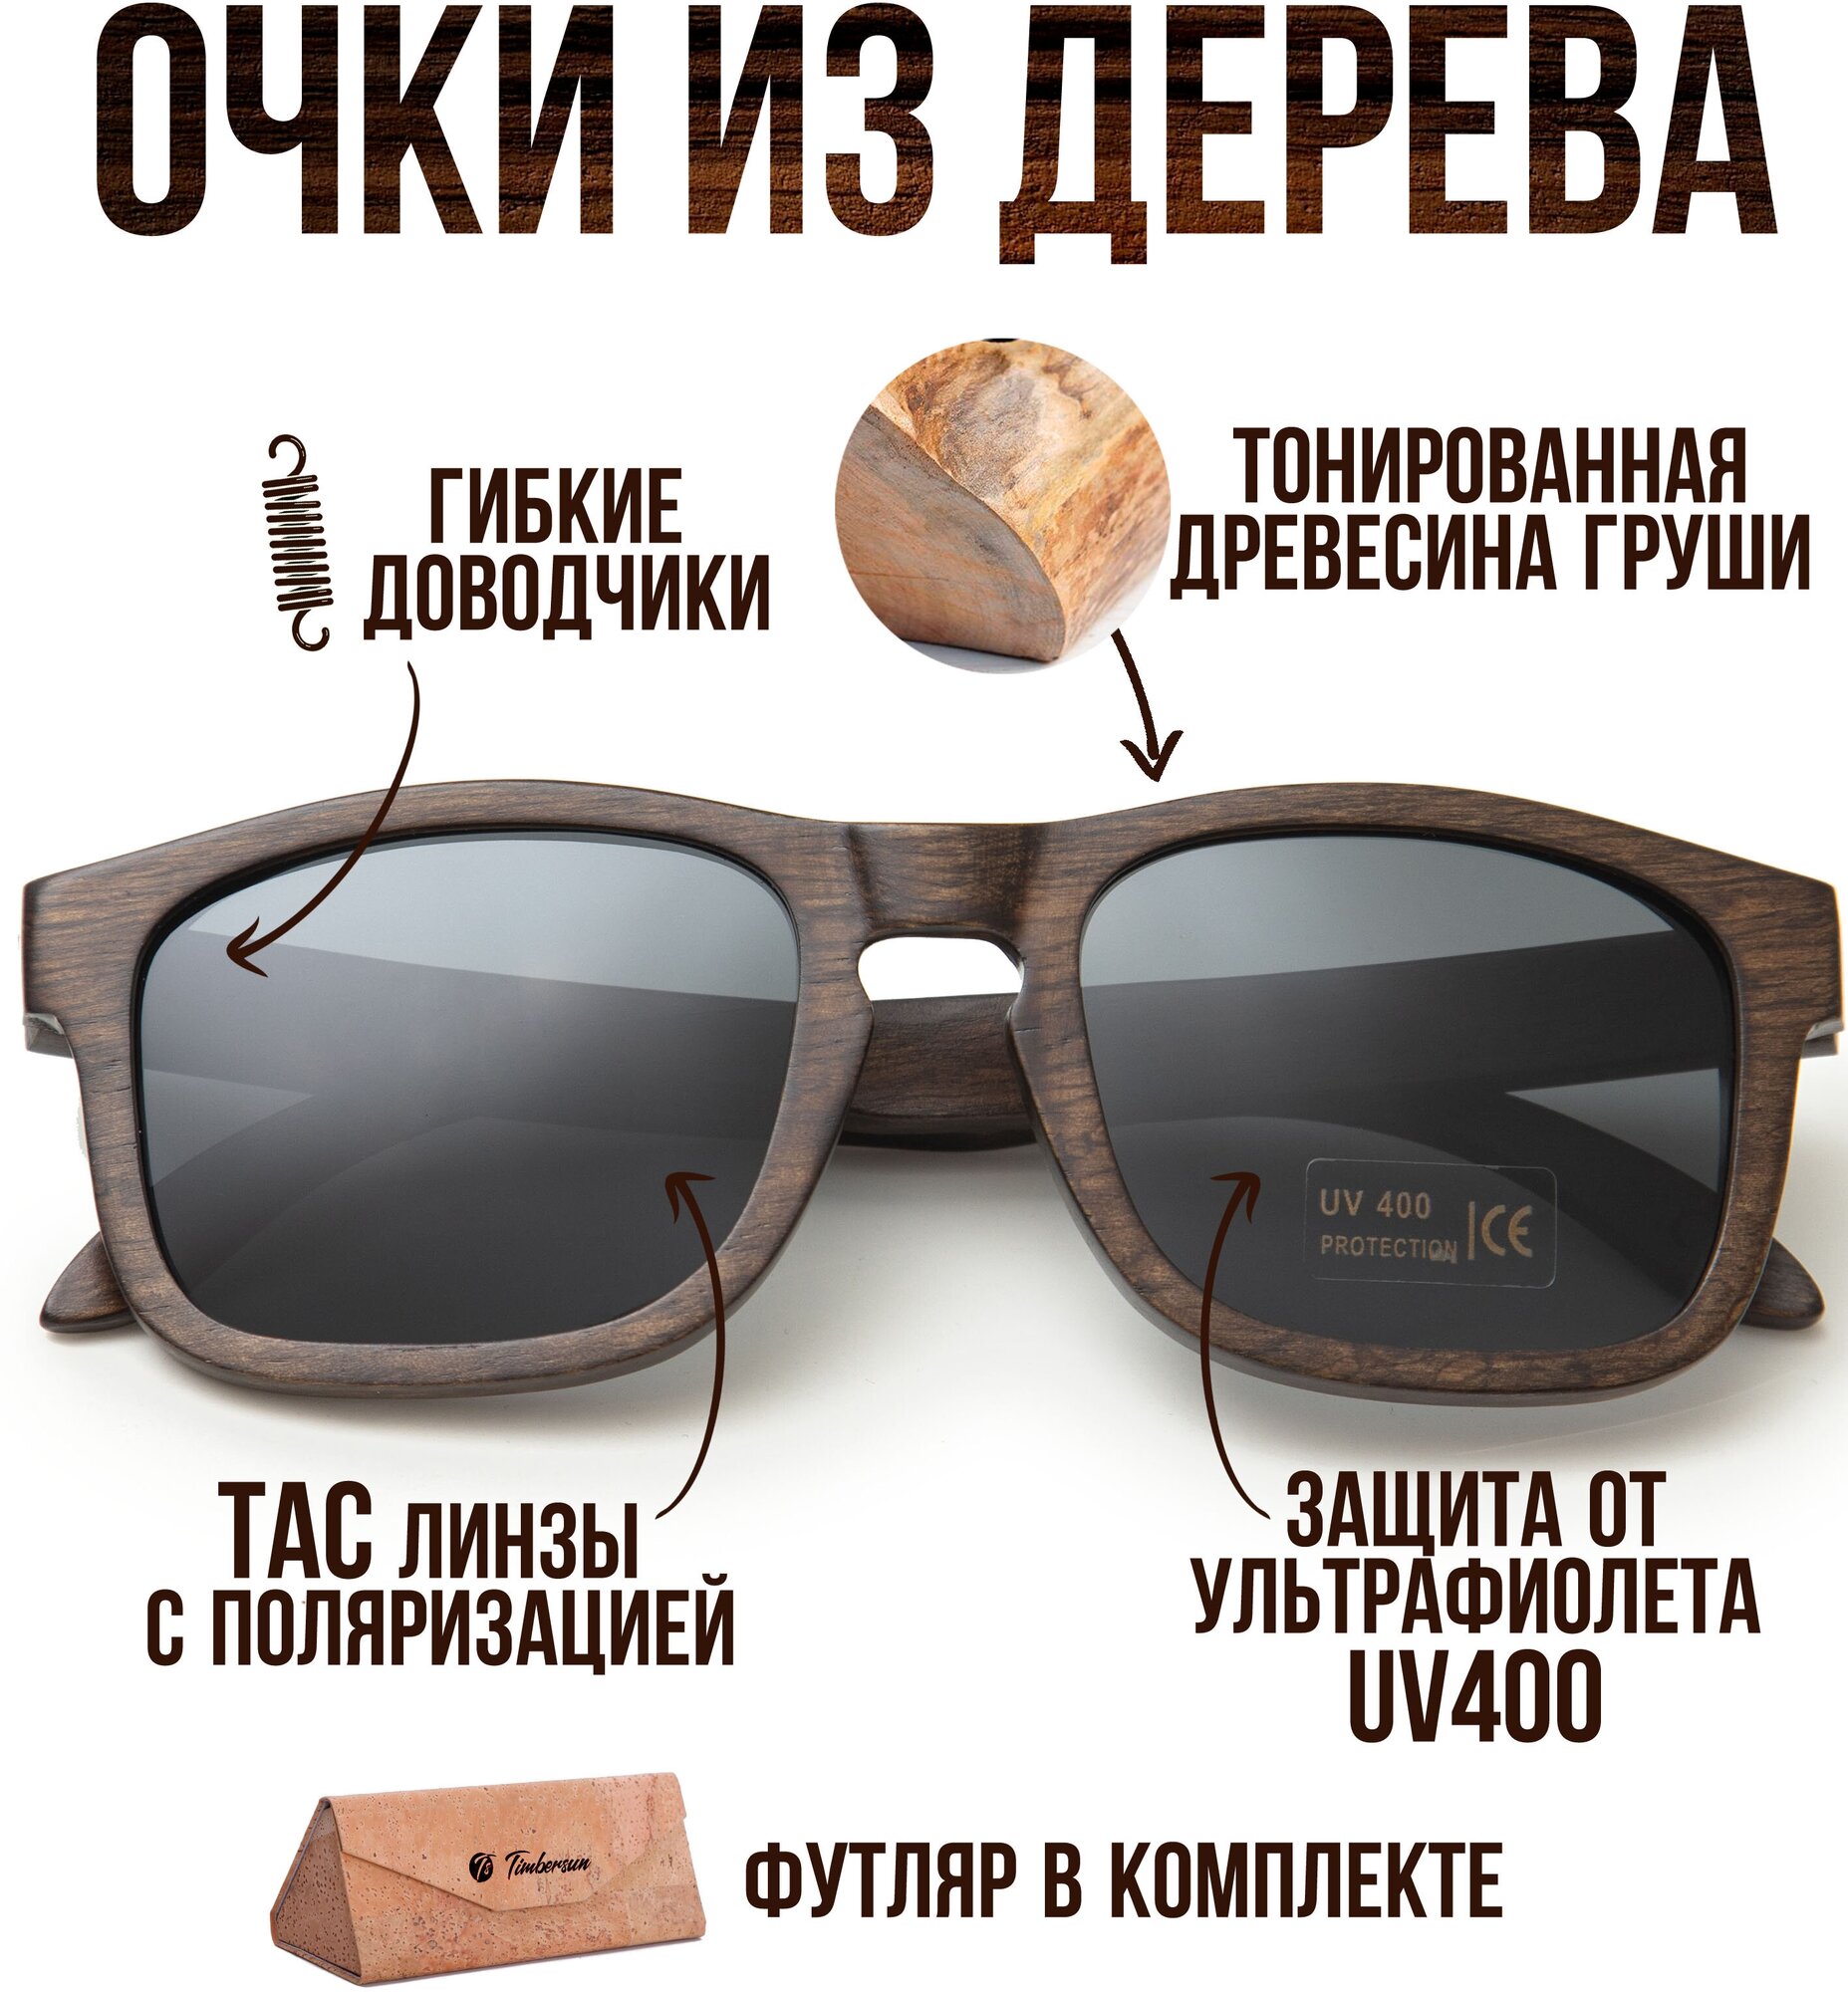 Солнцезащитные очки Timbersun